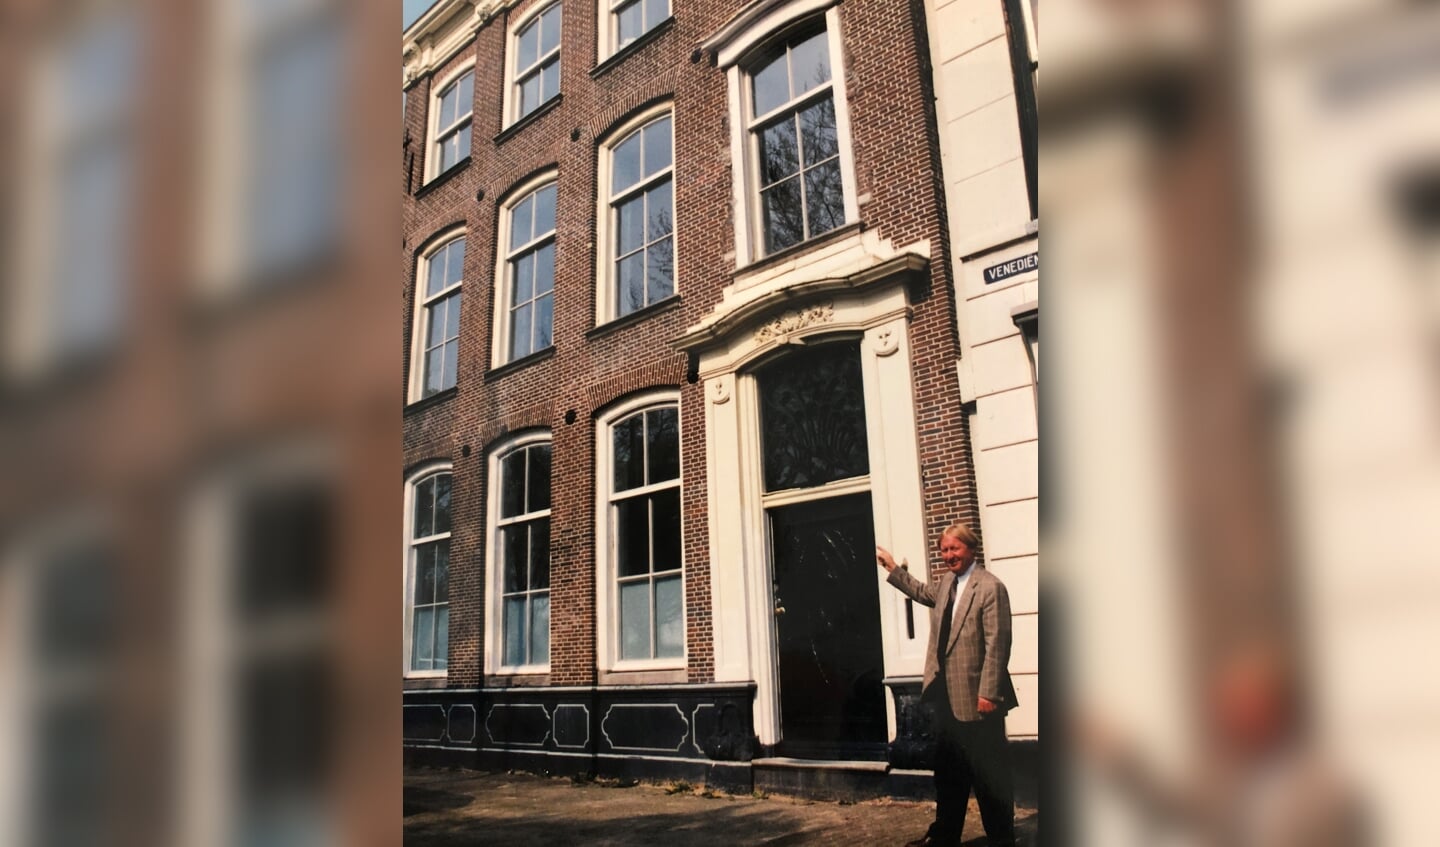 Grondlegger Joop van Overbeek voor het rijksmonument aan de Bierkade 9 in Purmerend. Het was het eerste object dat hij verkocht; voor 125.000 gulden. In die tijd een mooi bedrag. Nu is het pand het 15-voudige waard. 